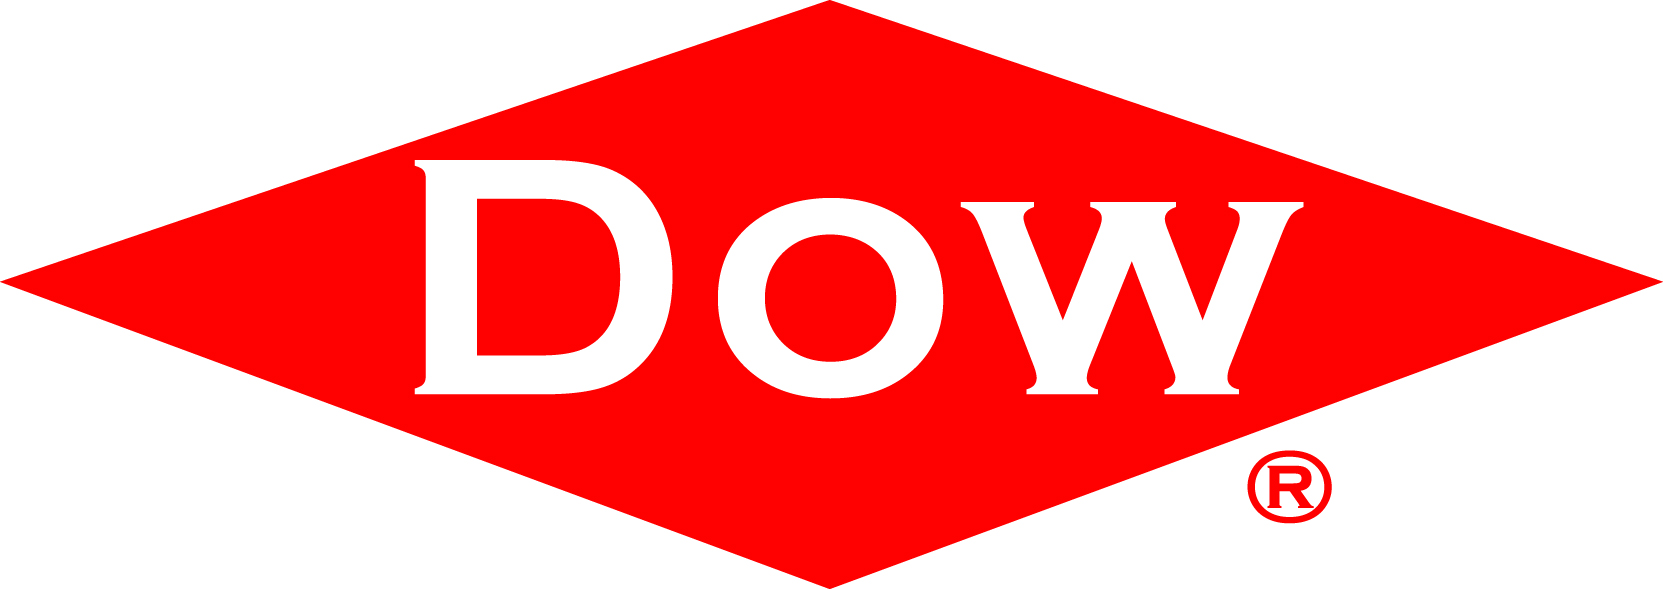 DOW-logo.jpg